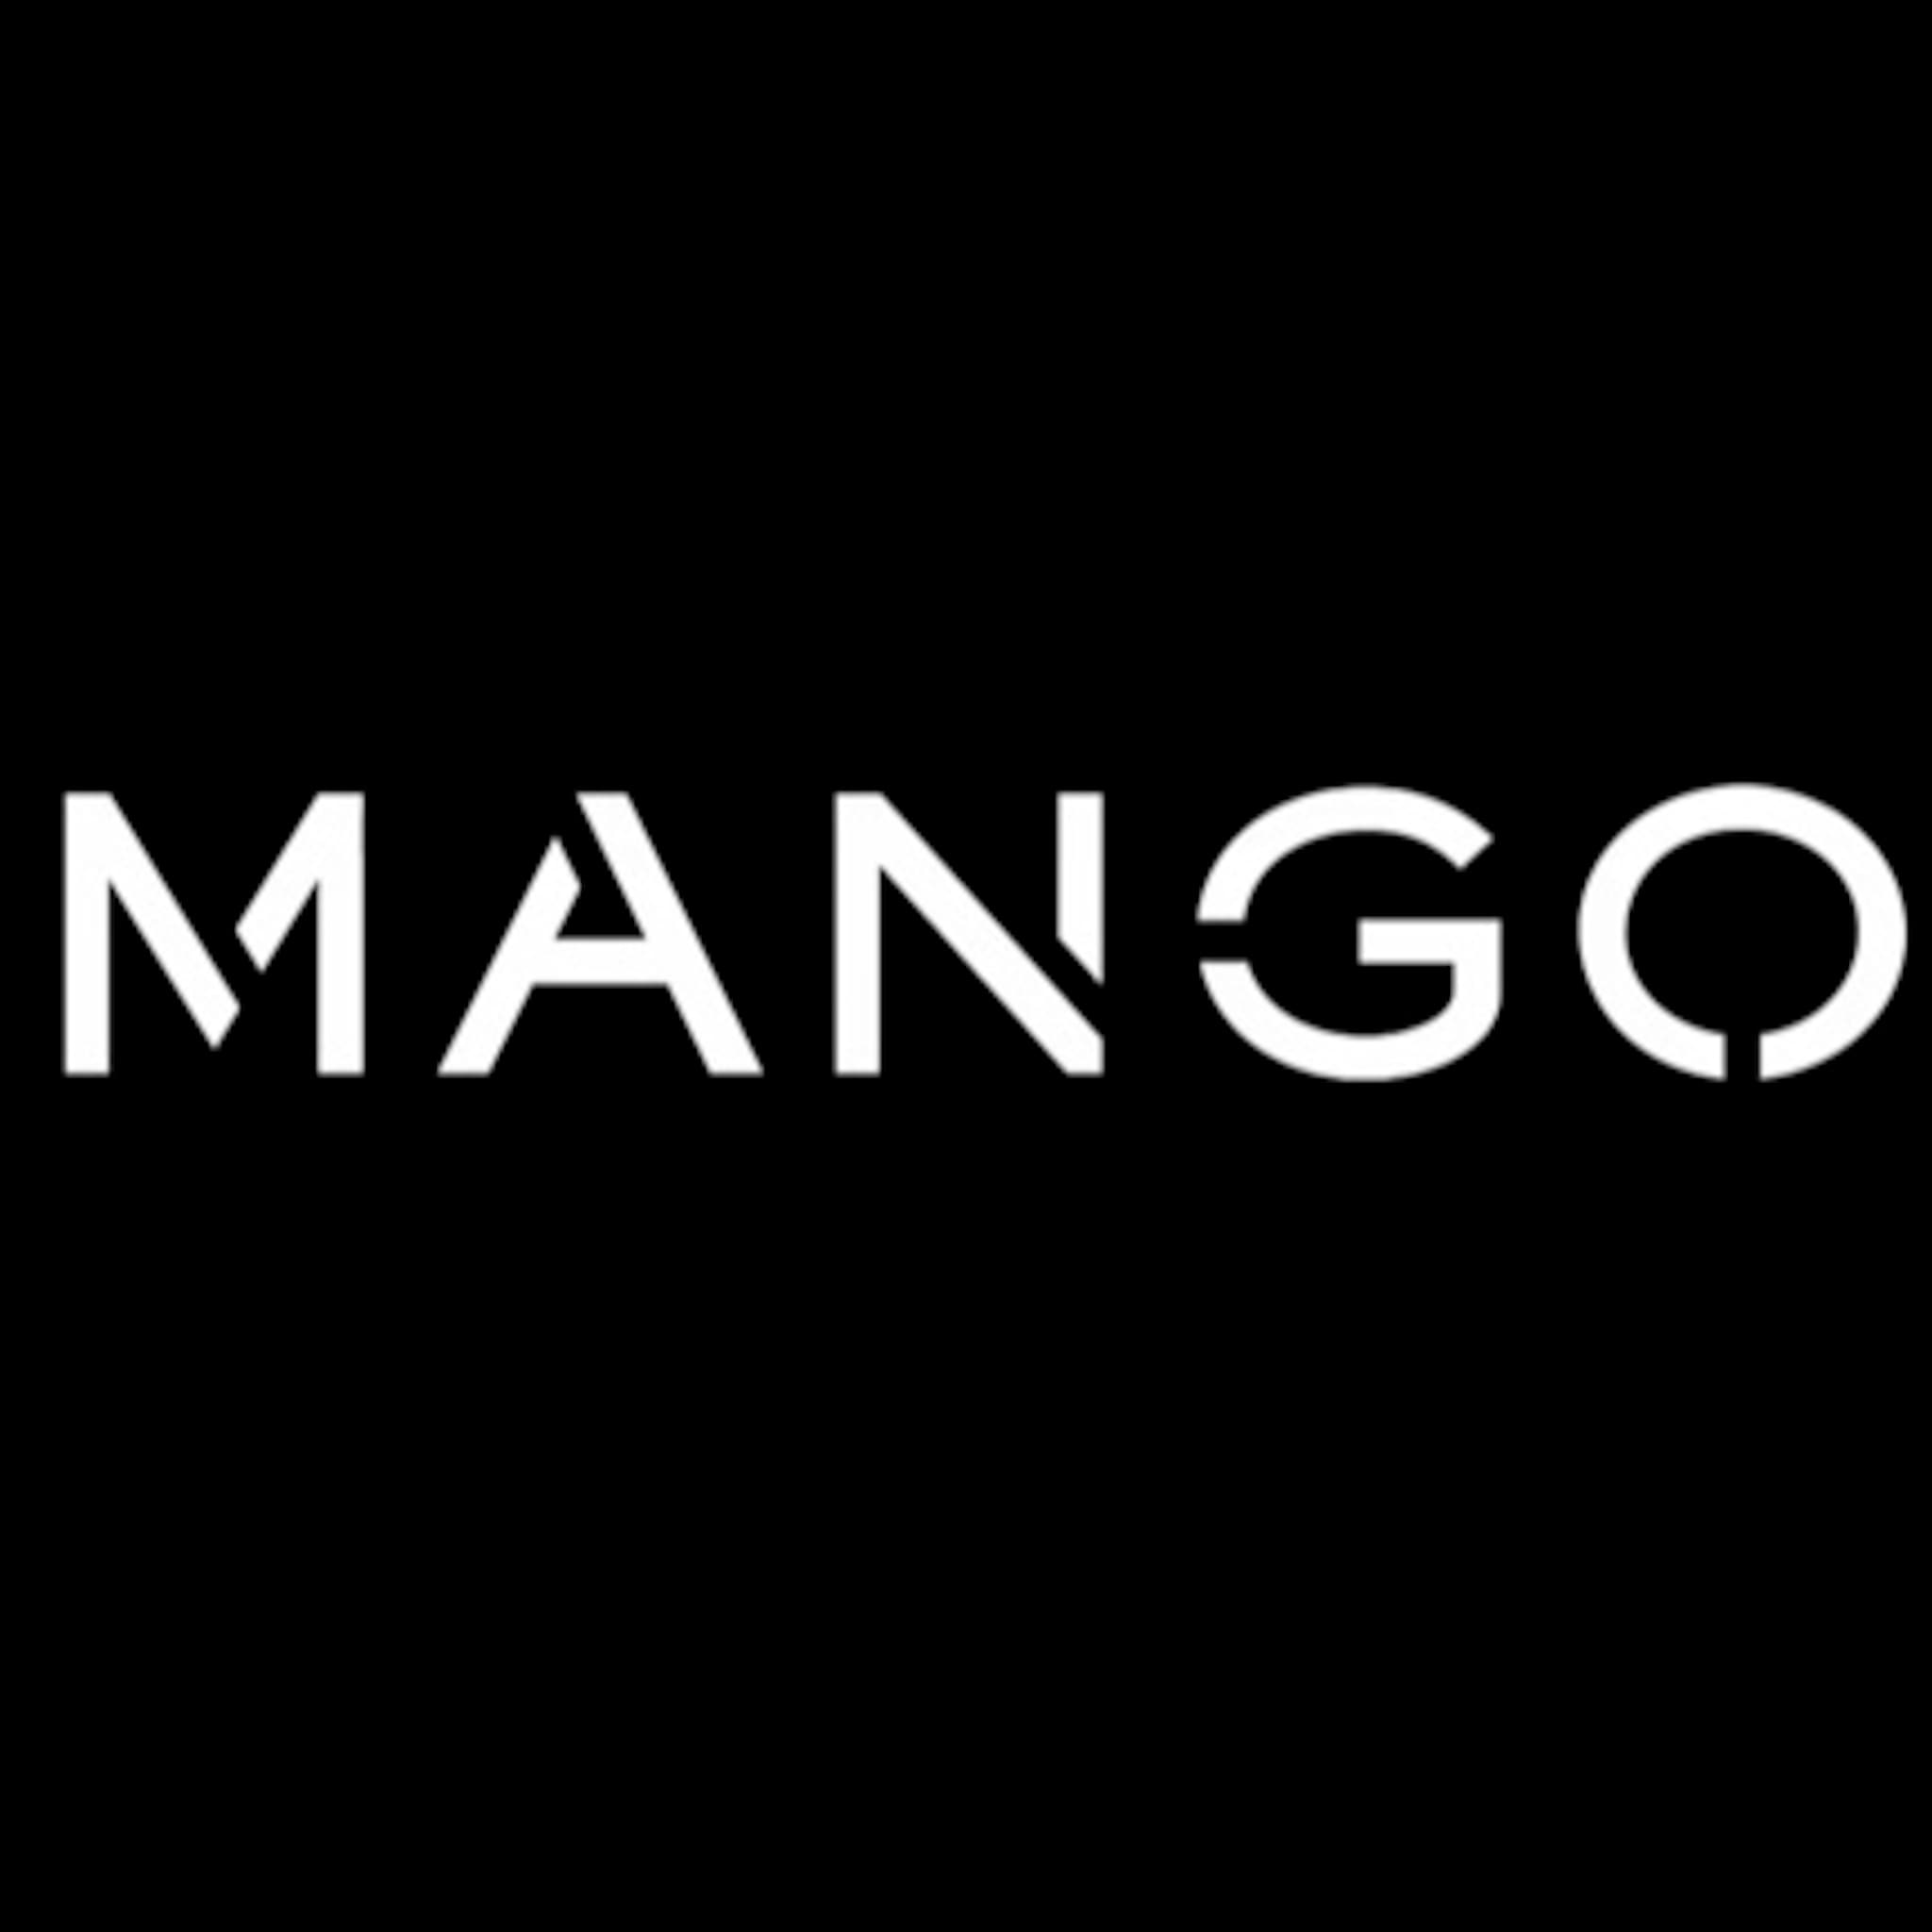 Mango logo